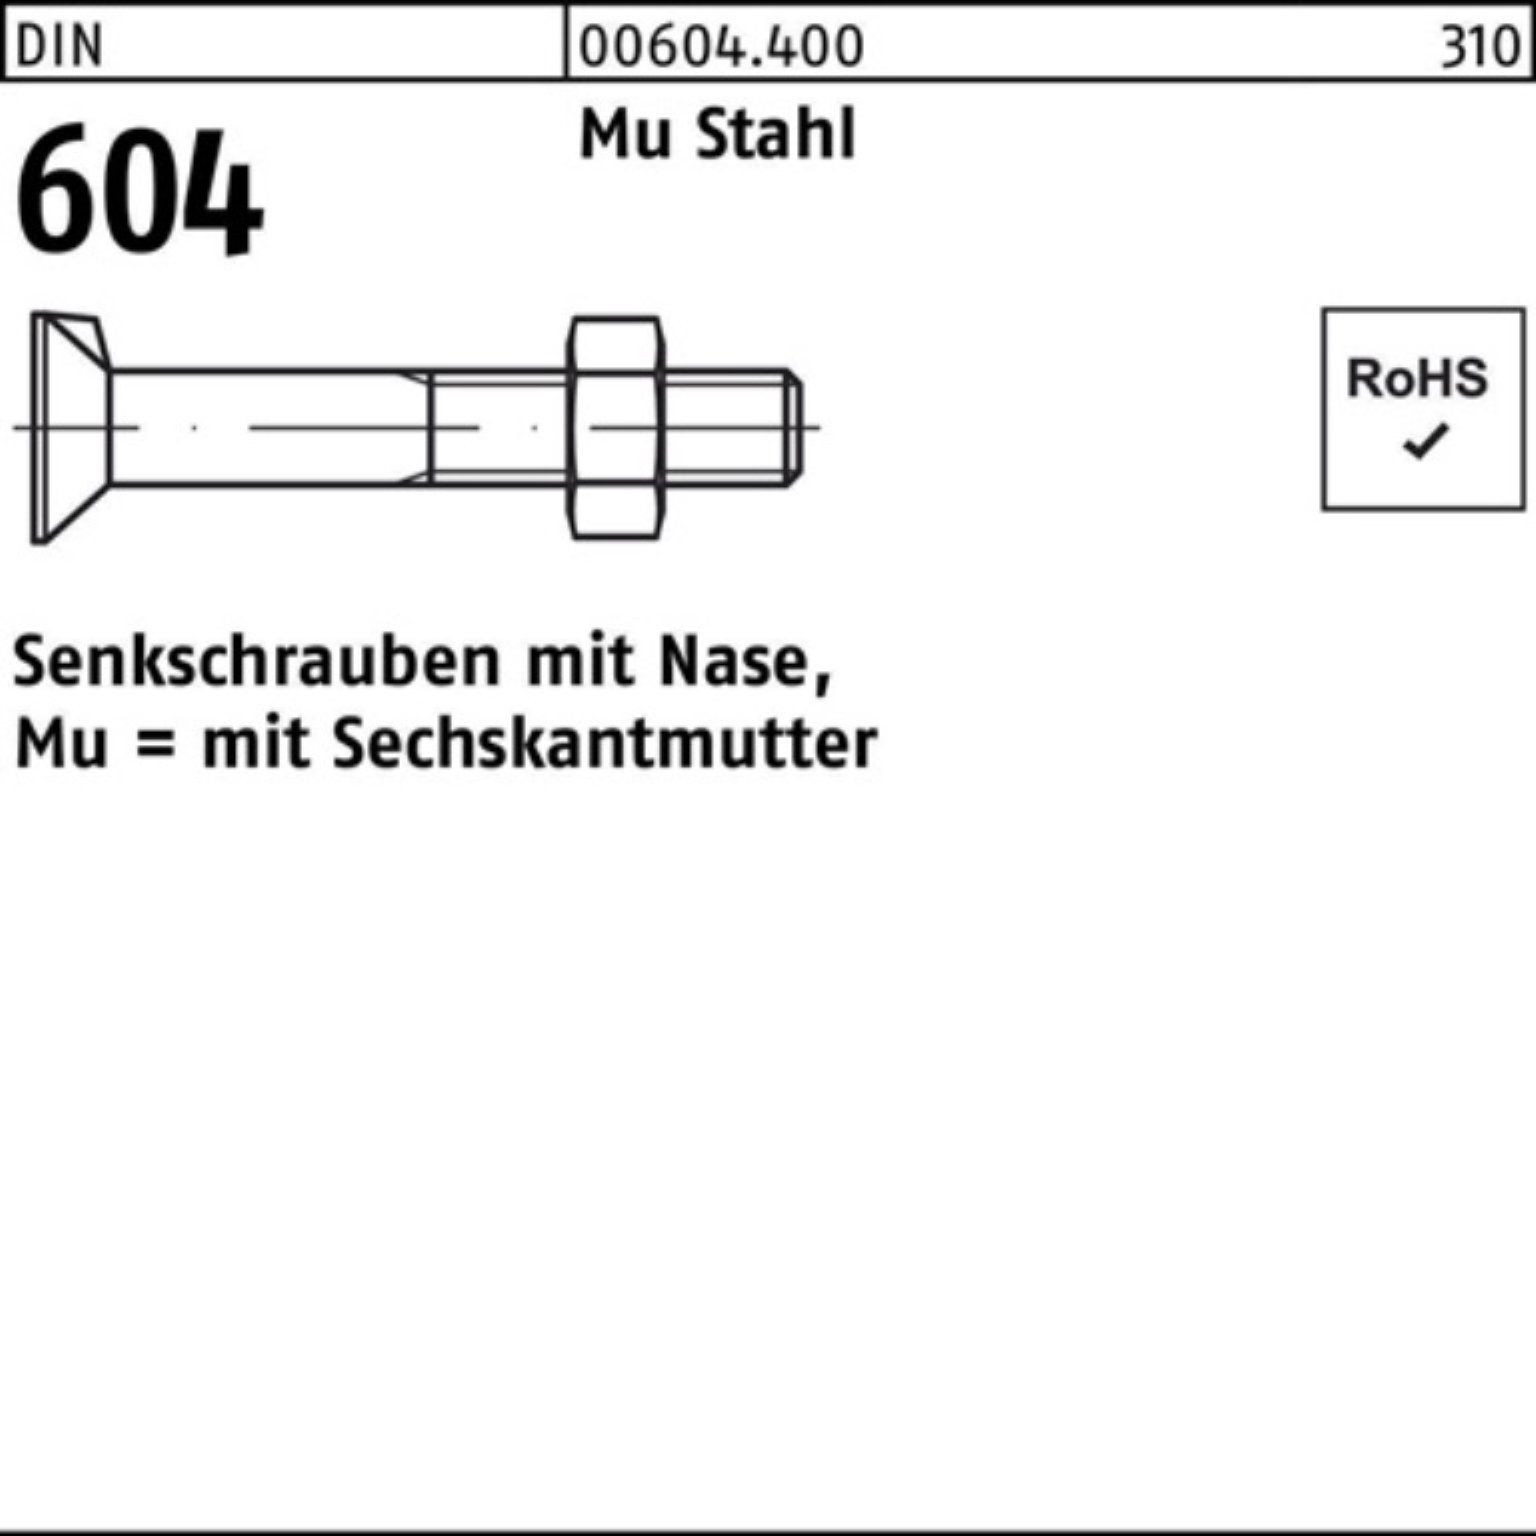 Reyher Senkschraube 200er Pack Senkschraube DIN 604 Nase/6-ktmutter M8x 70 Mu Stahl 4.6 20